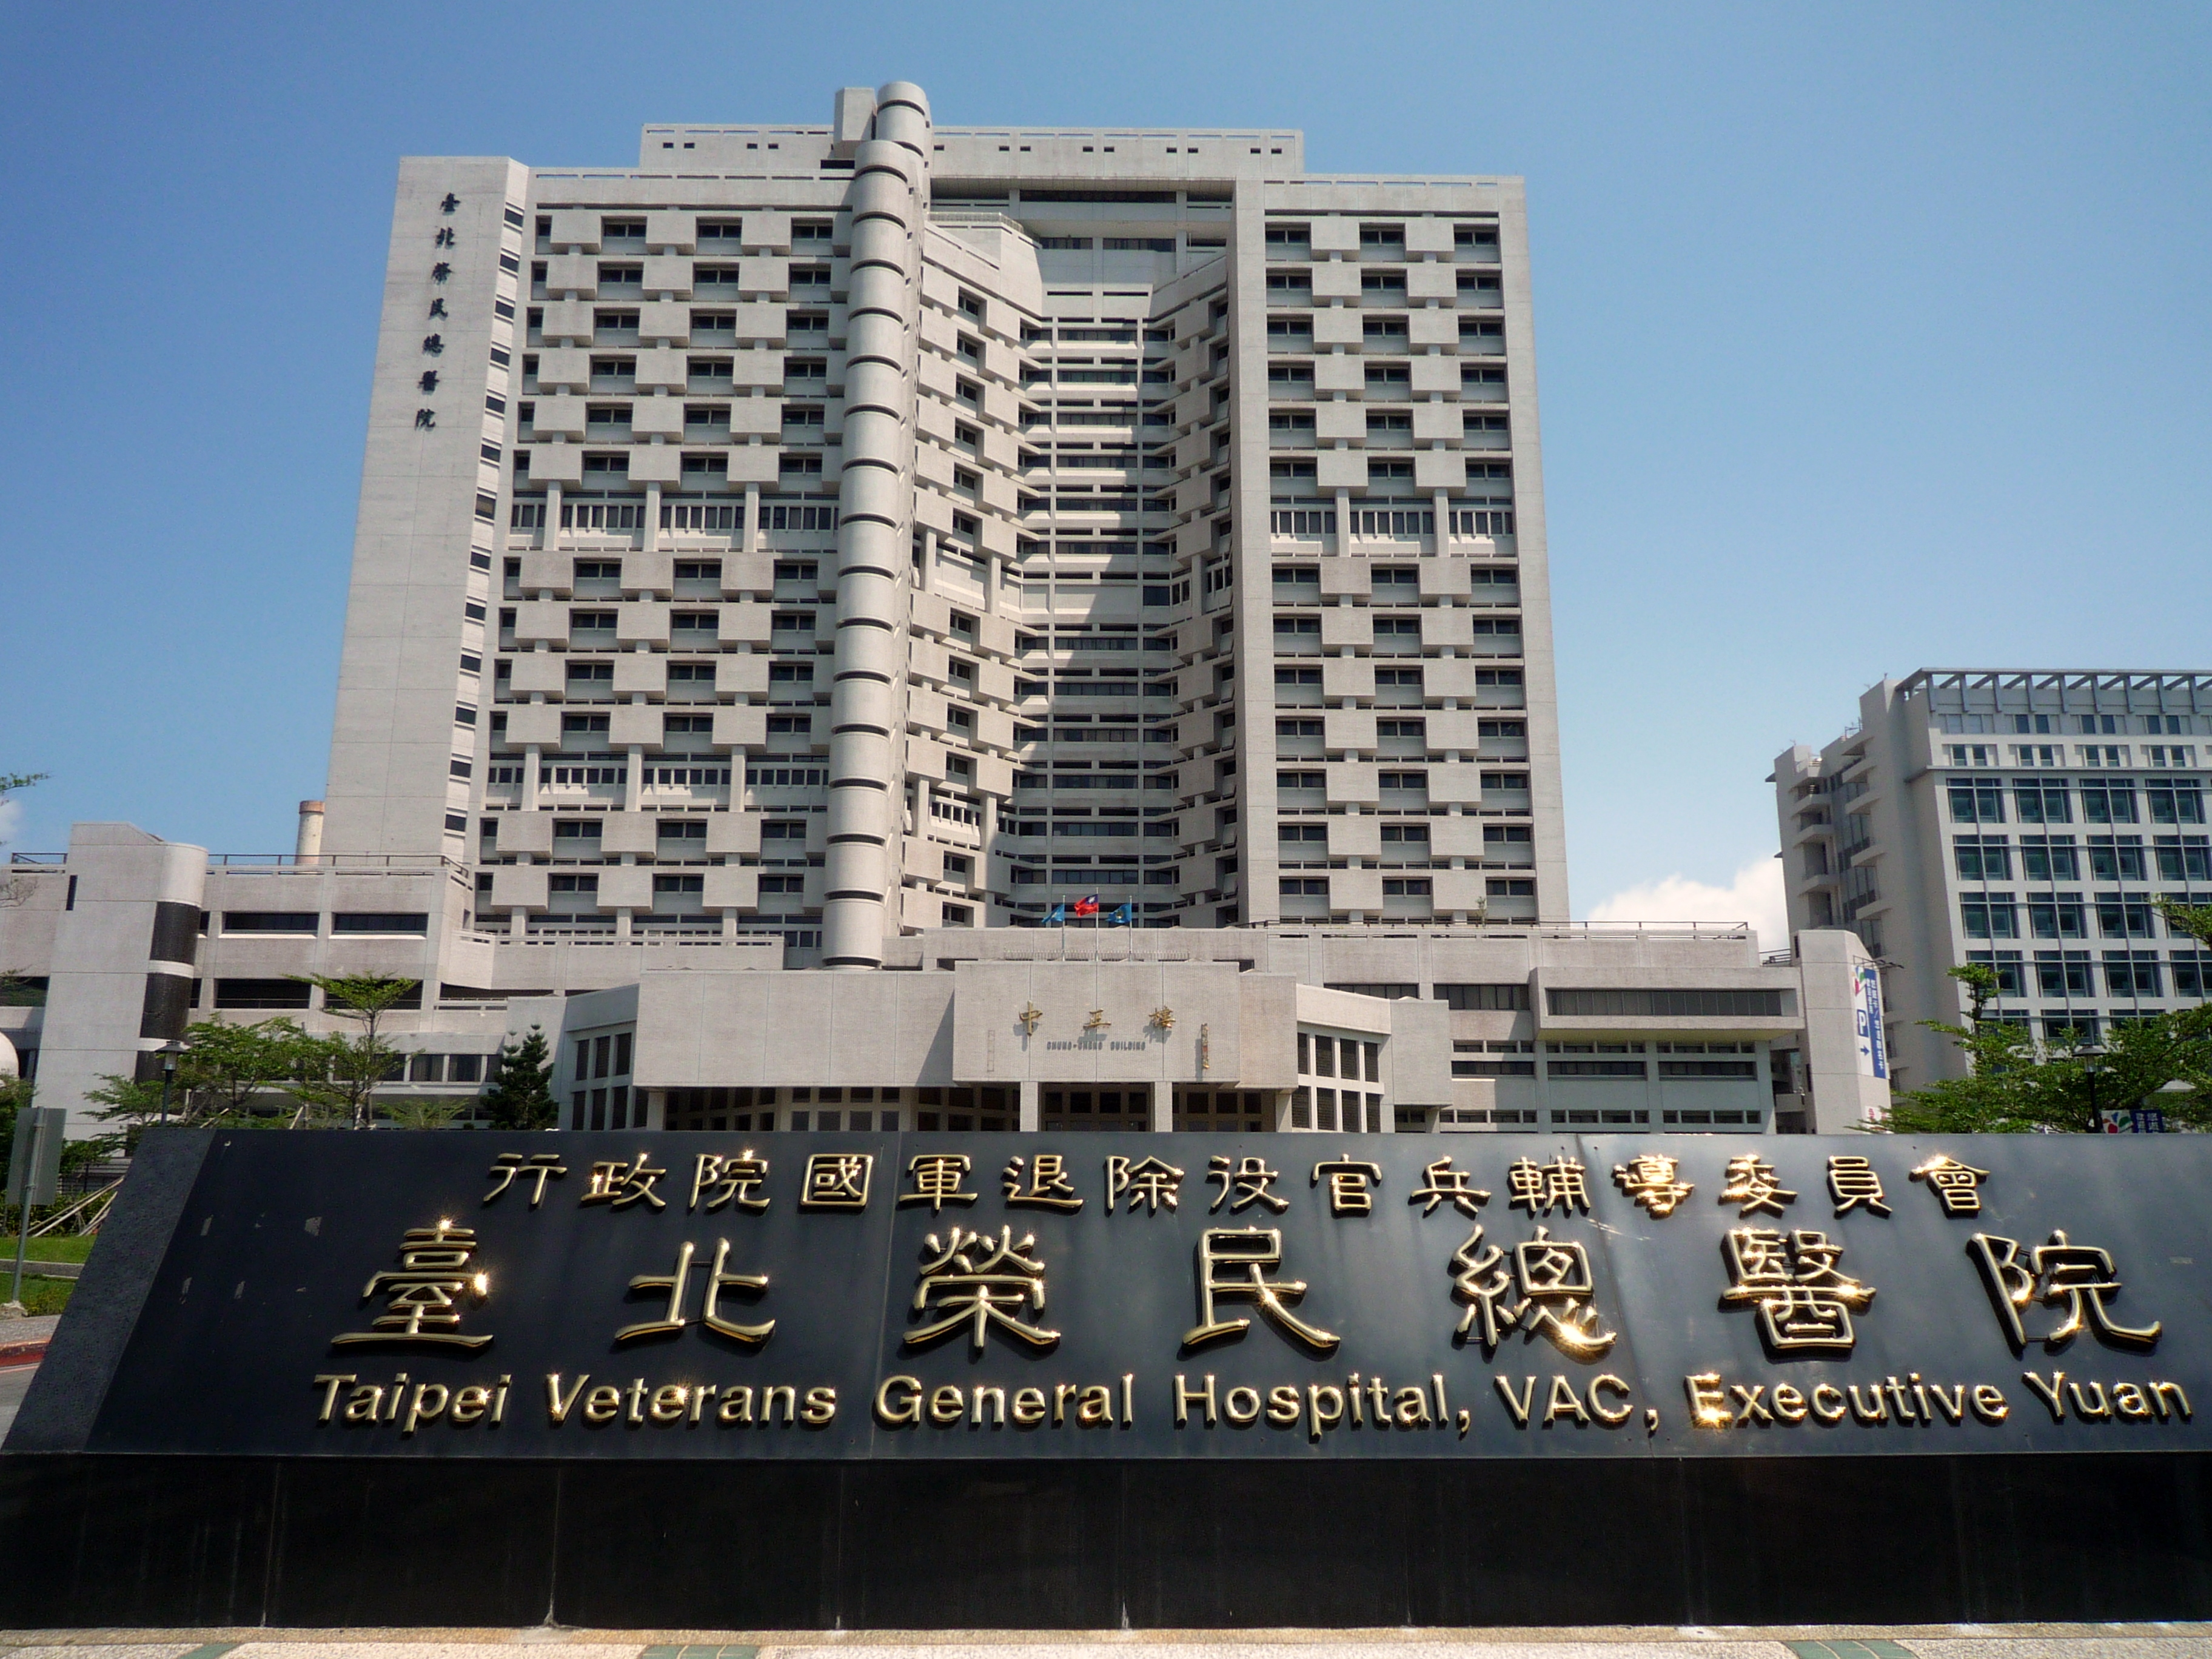 臺北榮民總醫院 中正樓圖示
��